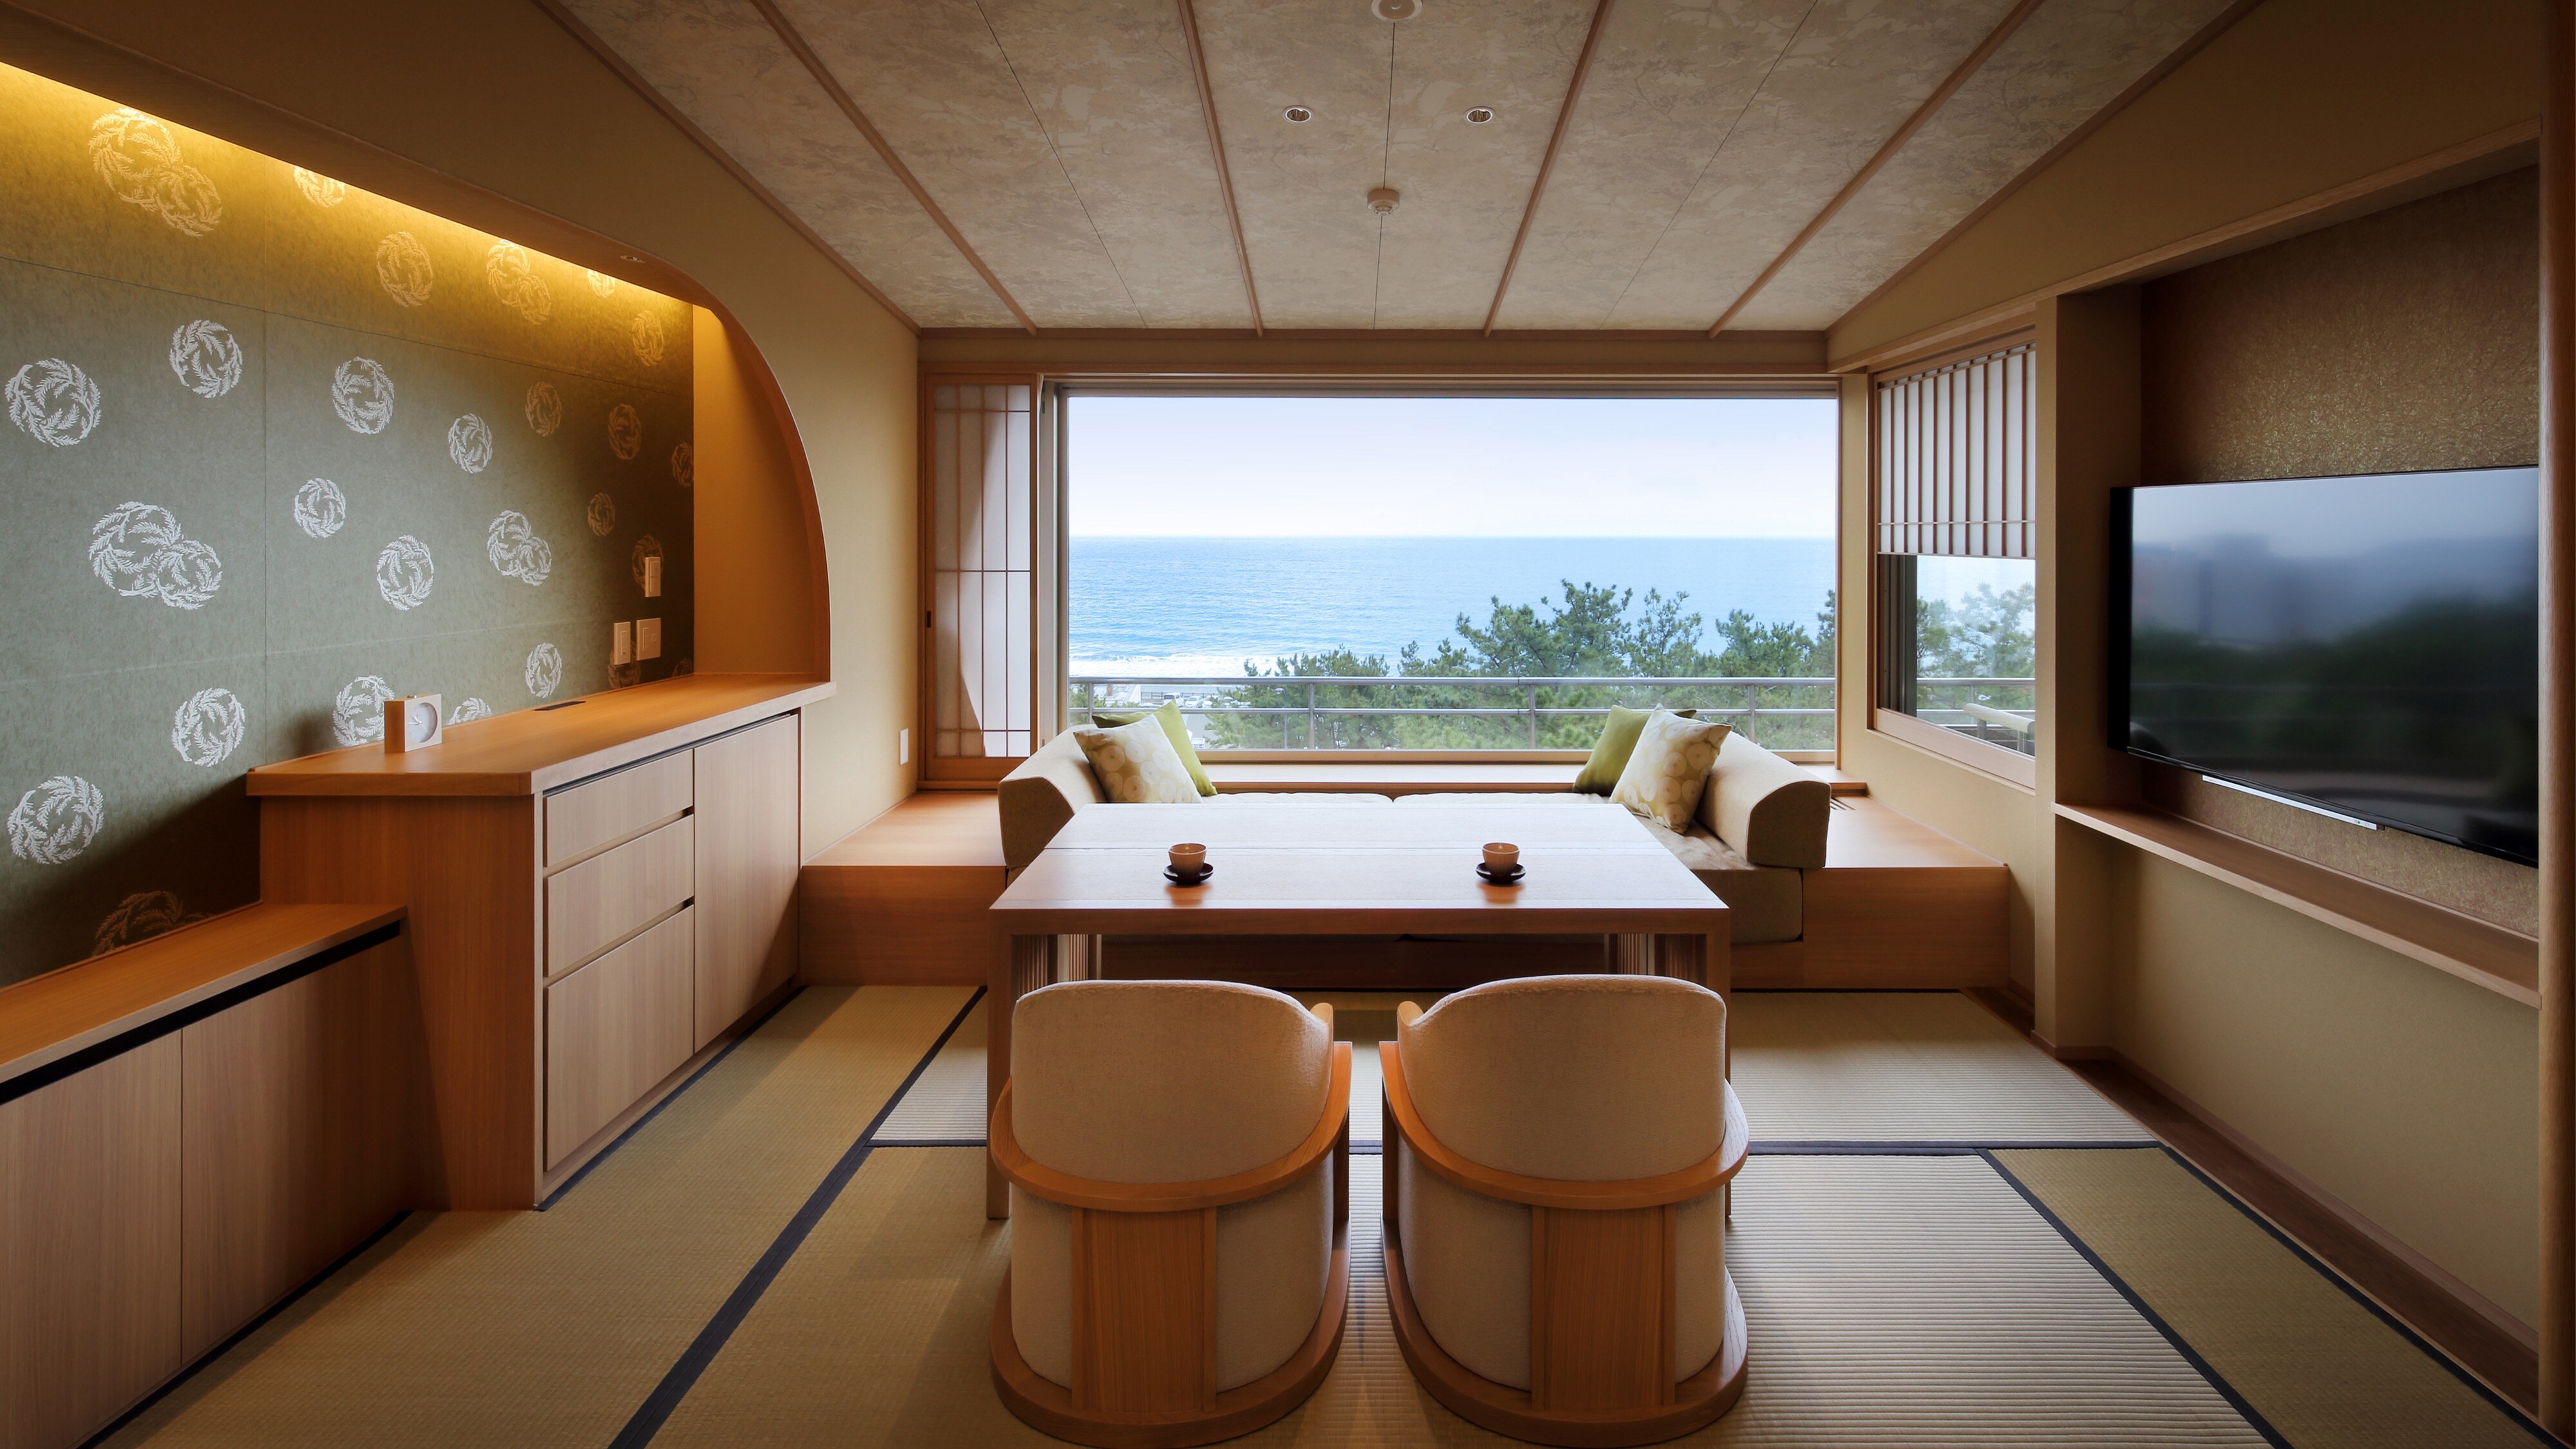 新：日西式溫泉半露天房間（餐廳+ TW 床）[6F]（窗邊餐廳類型圖像）